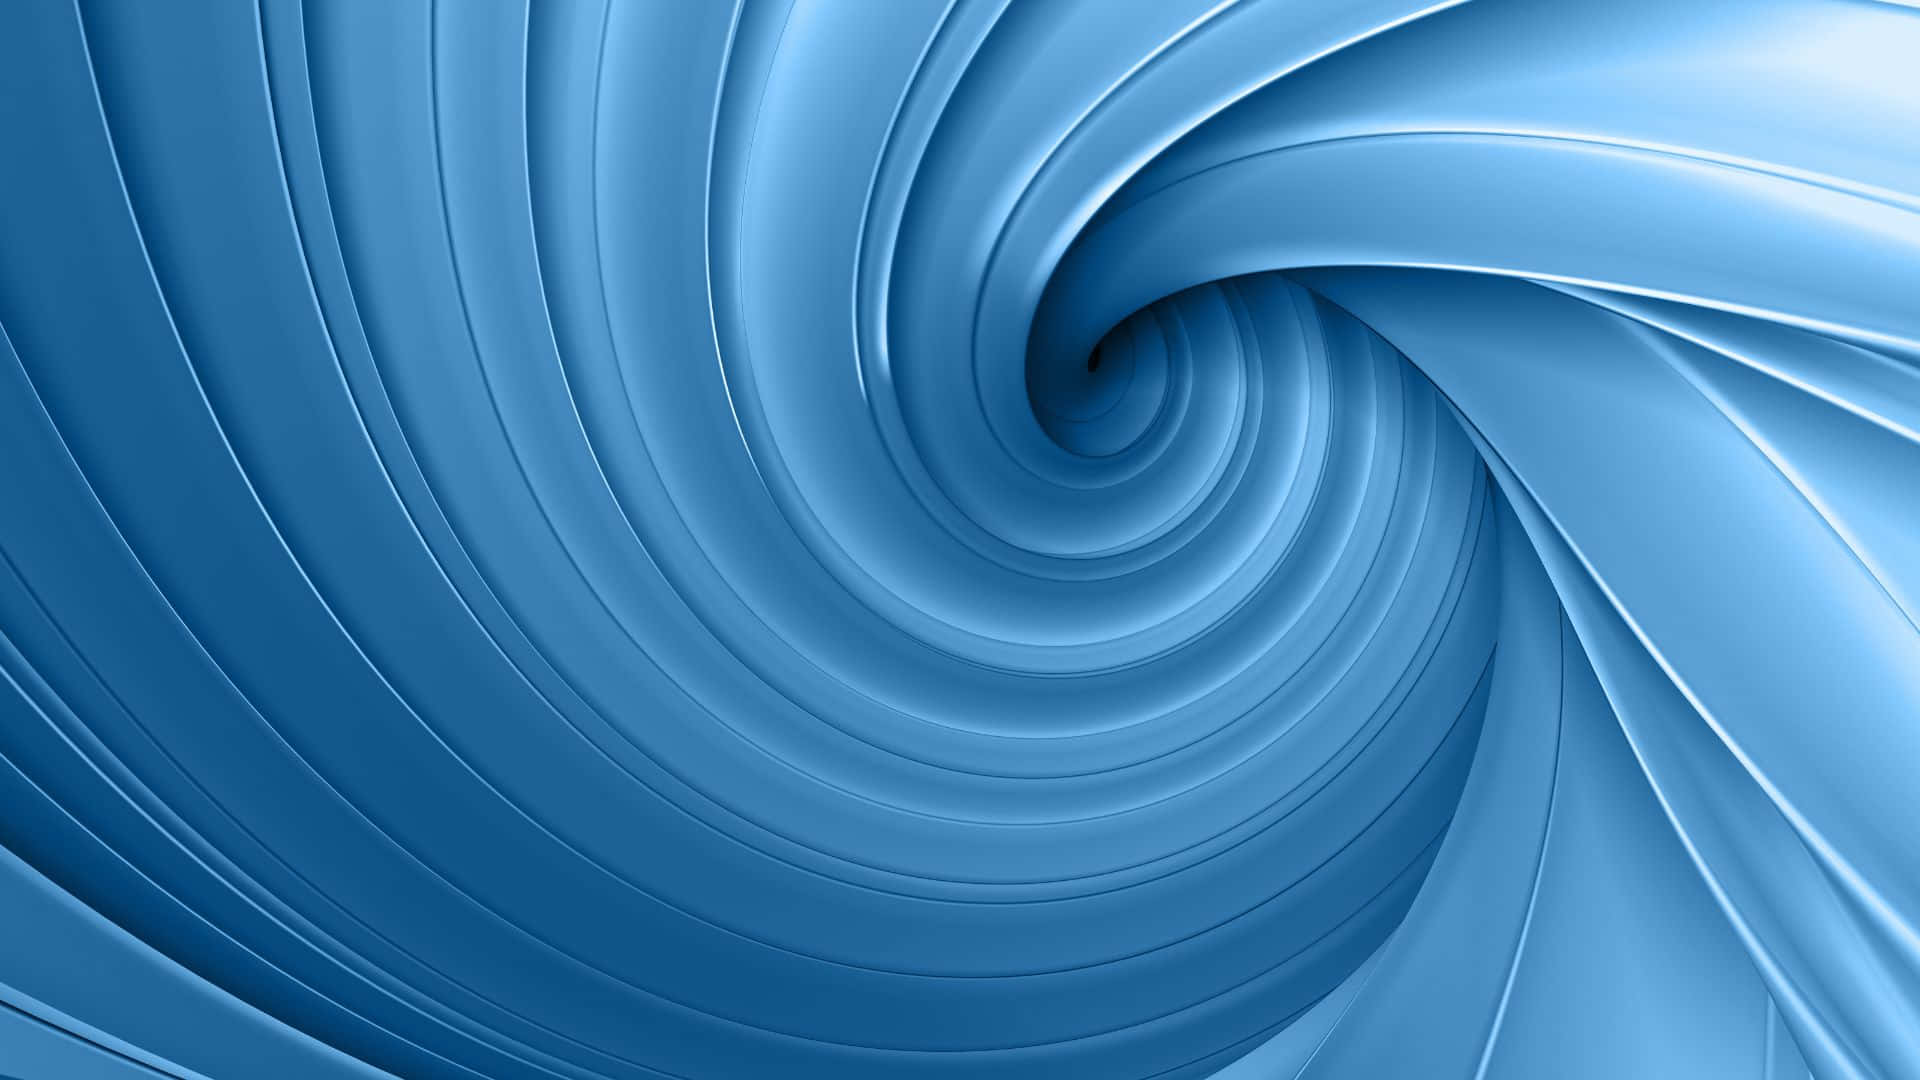 dark blue swirls background